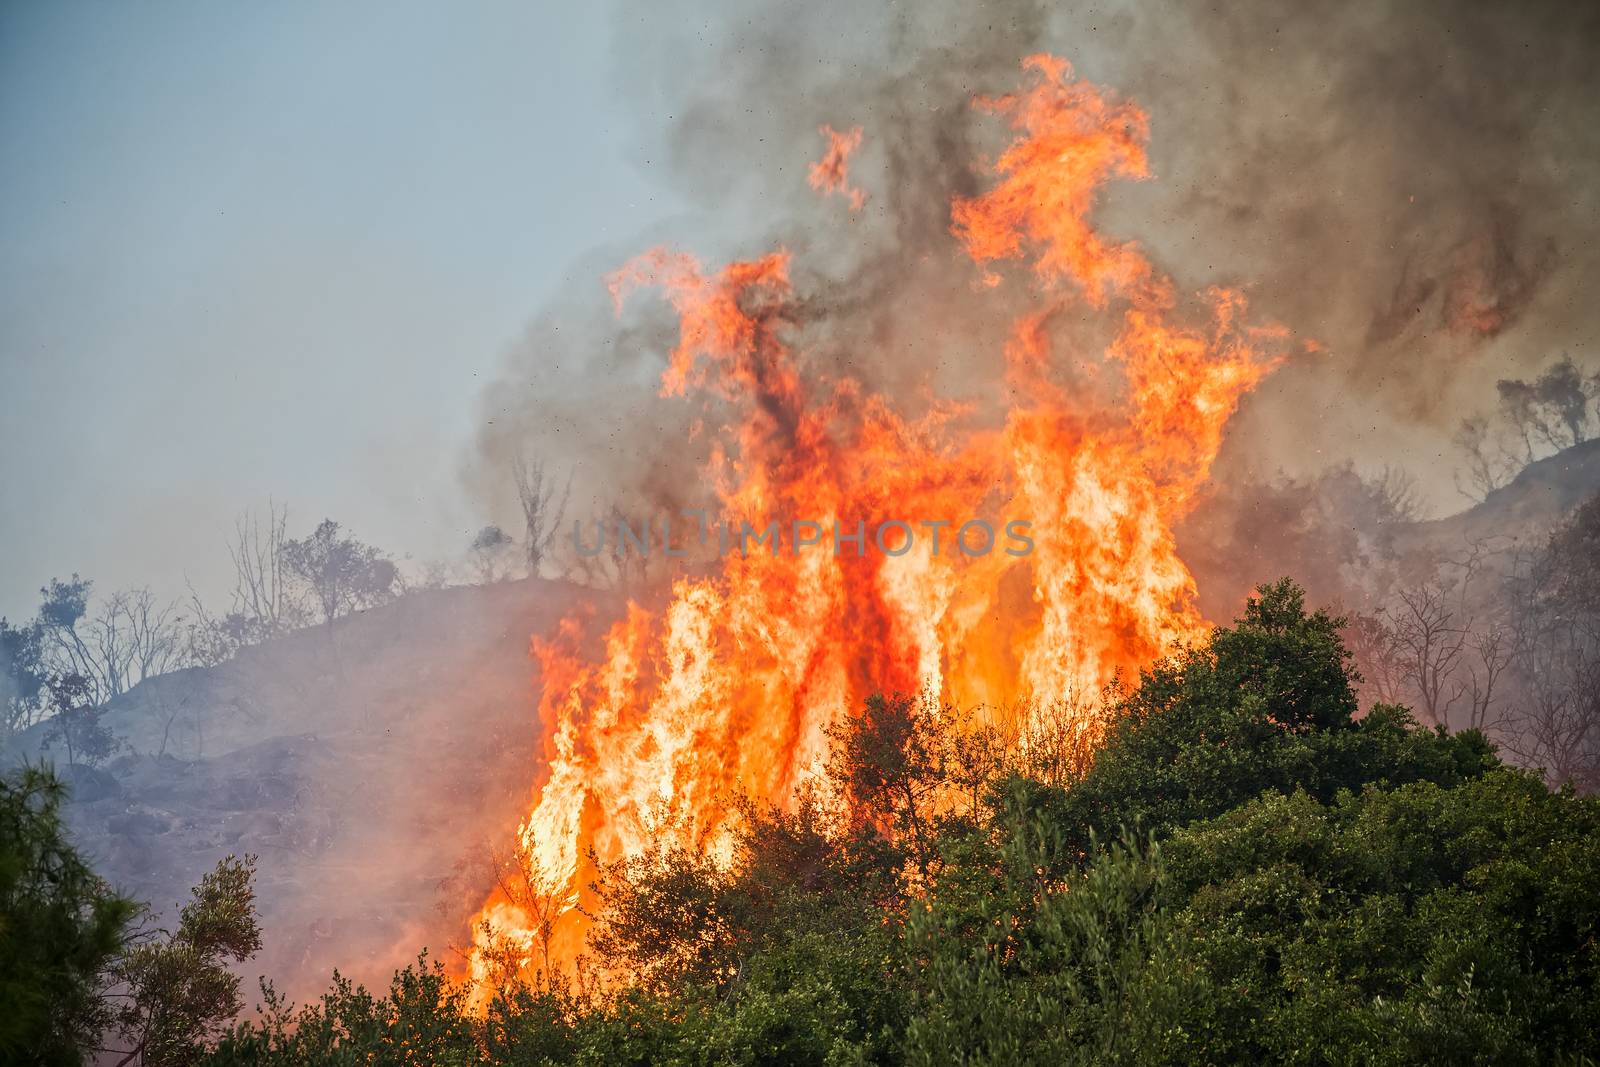 fire in a pine forest in Kassandra, Chalkidiki, Greece 